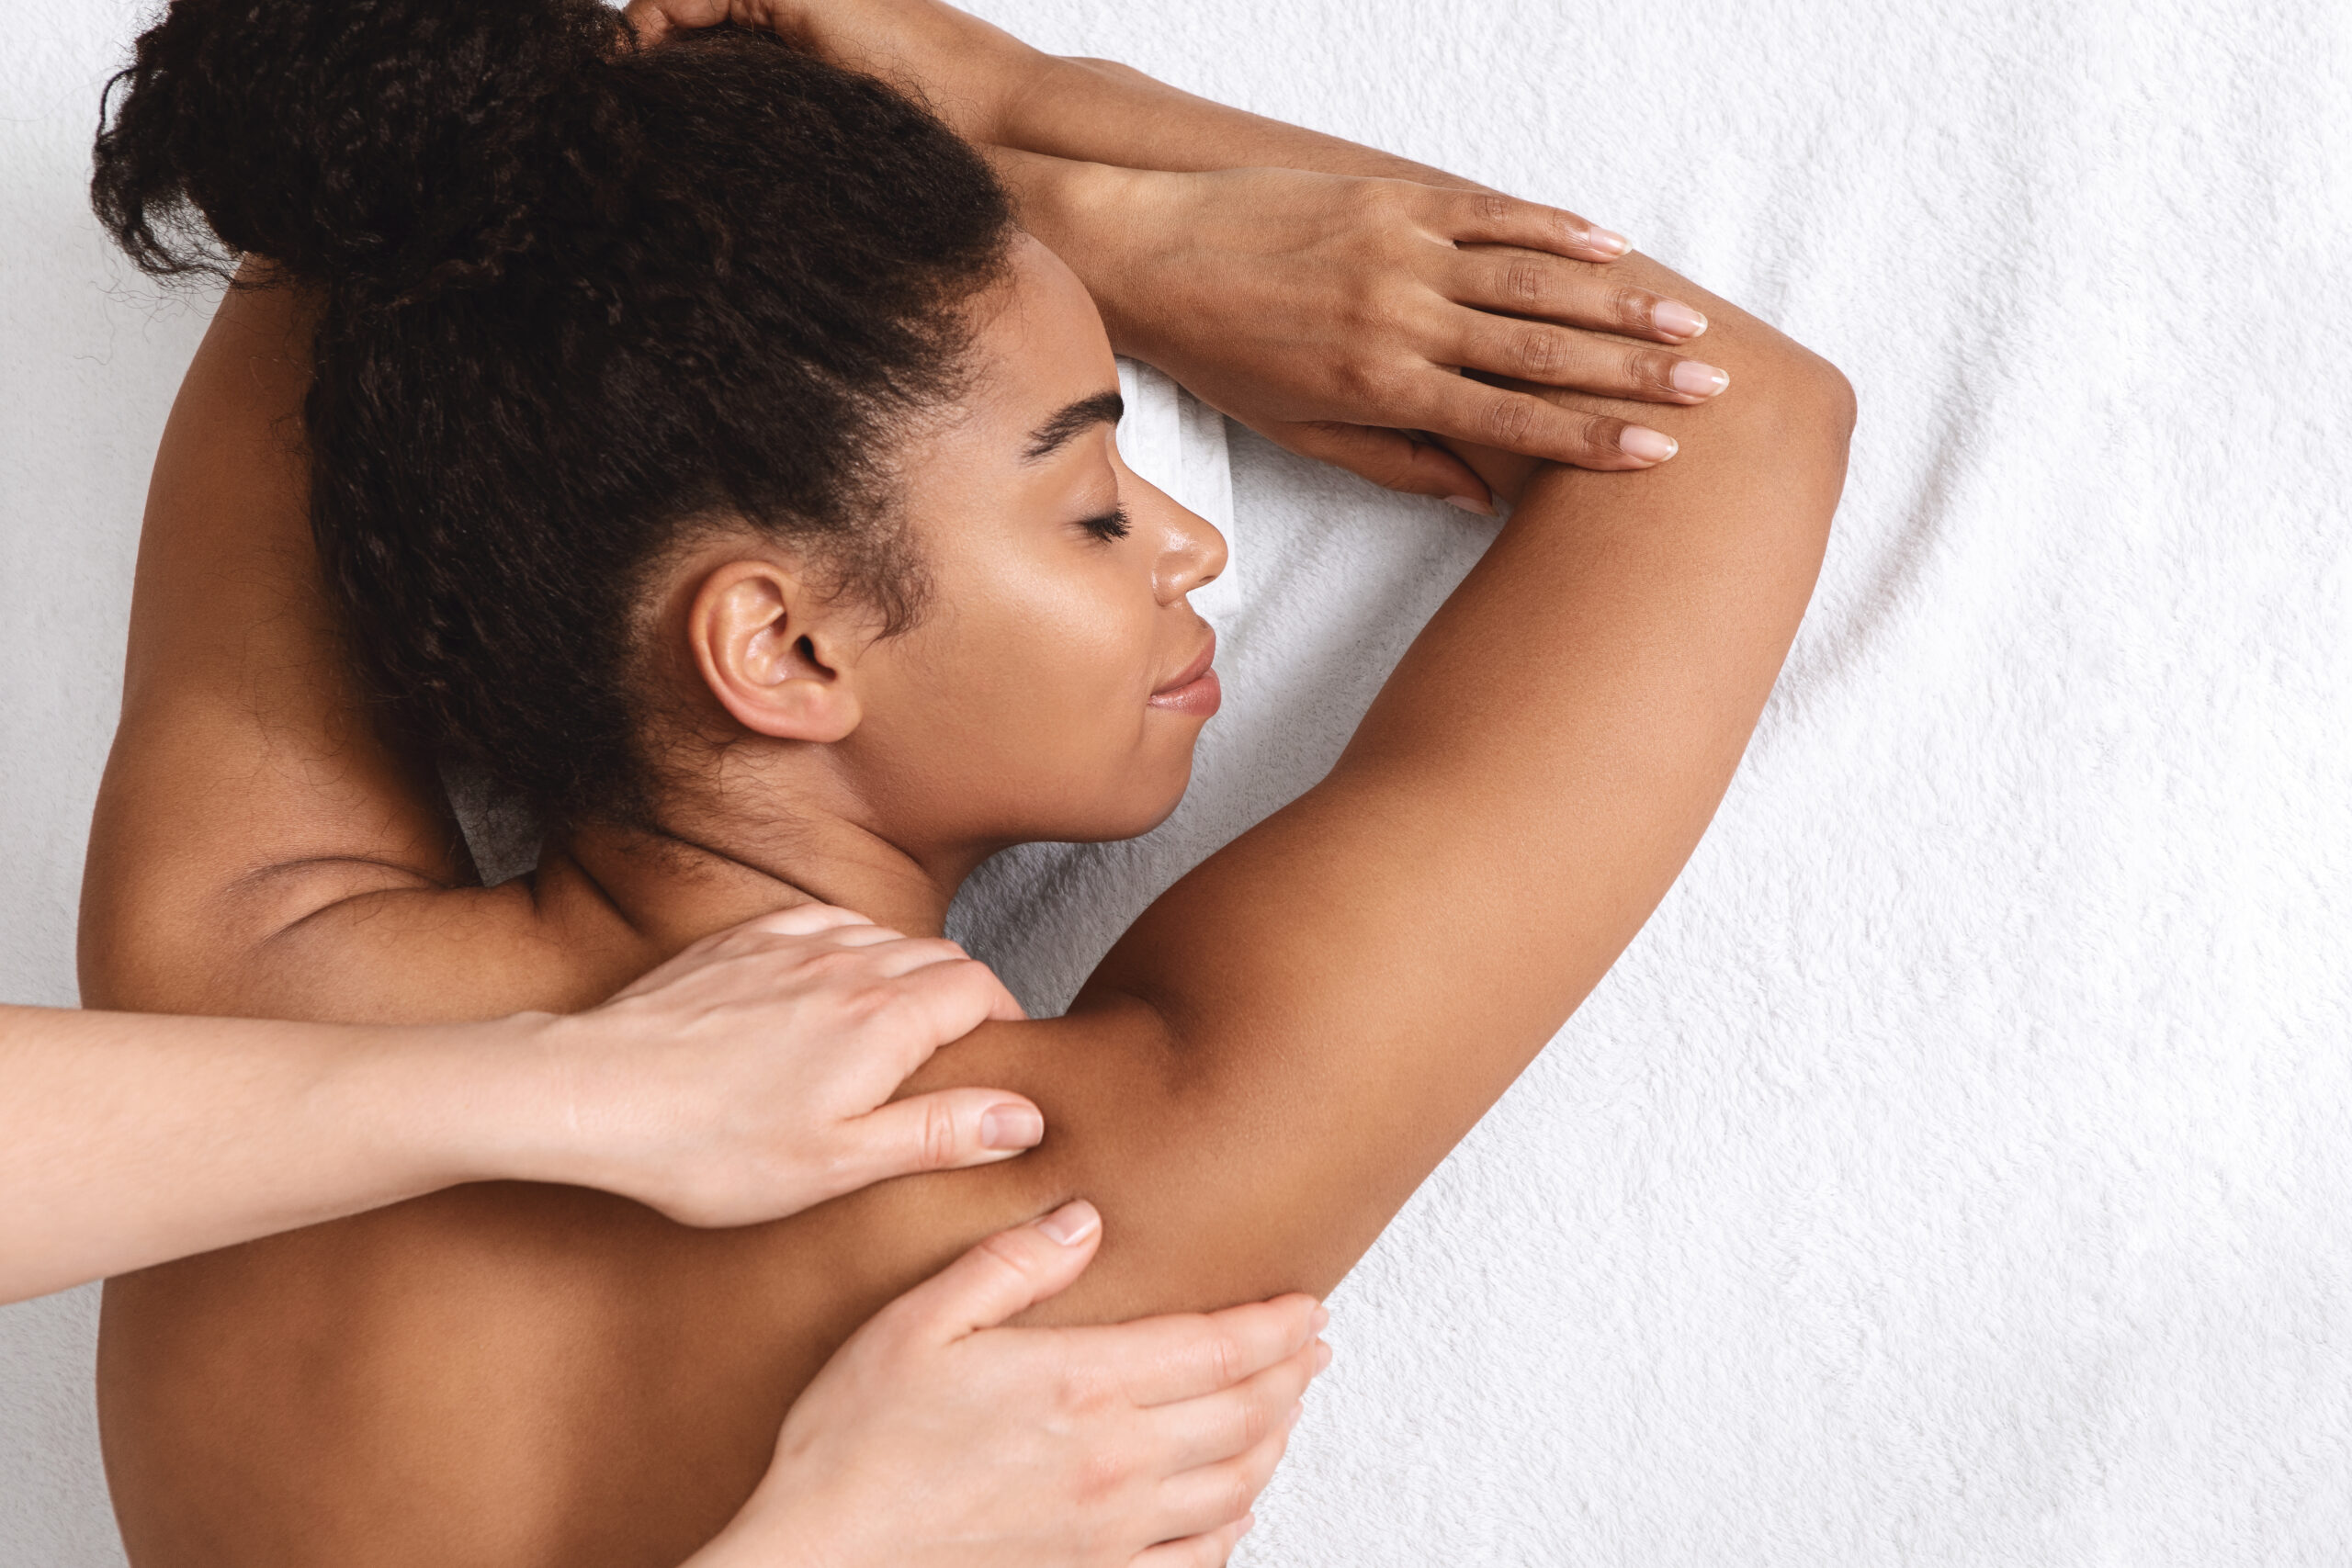 women taking massage therapy